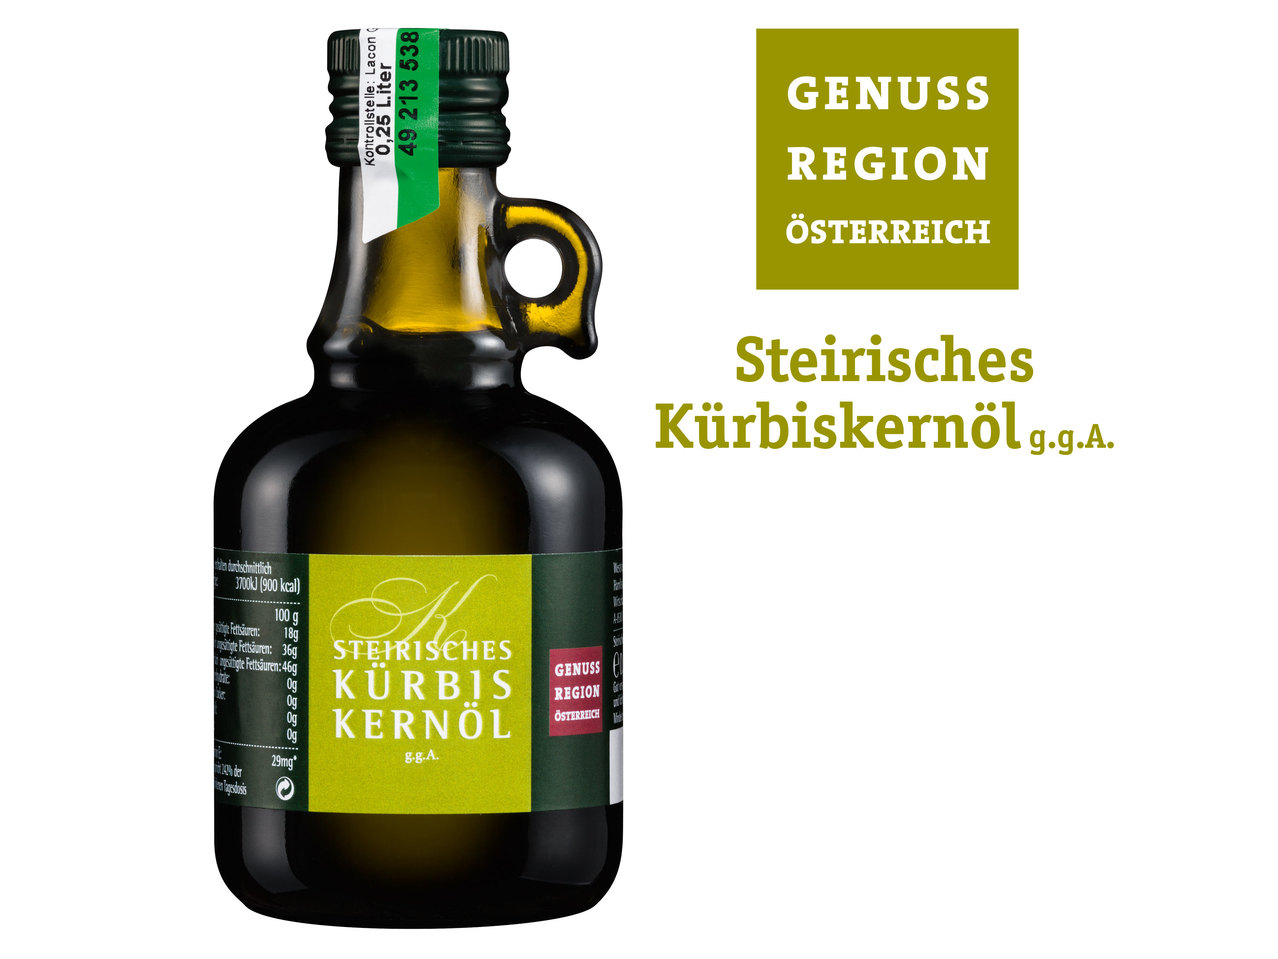 GENUSS REGION ÖSTERREICH Steirisches Kürbiskernöl g.g.A.